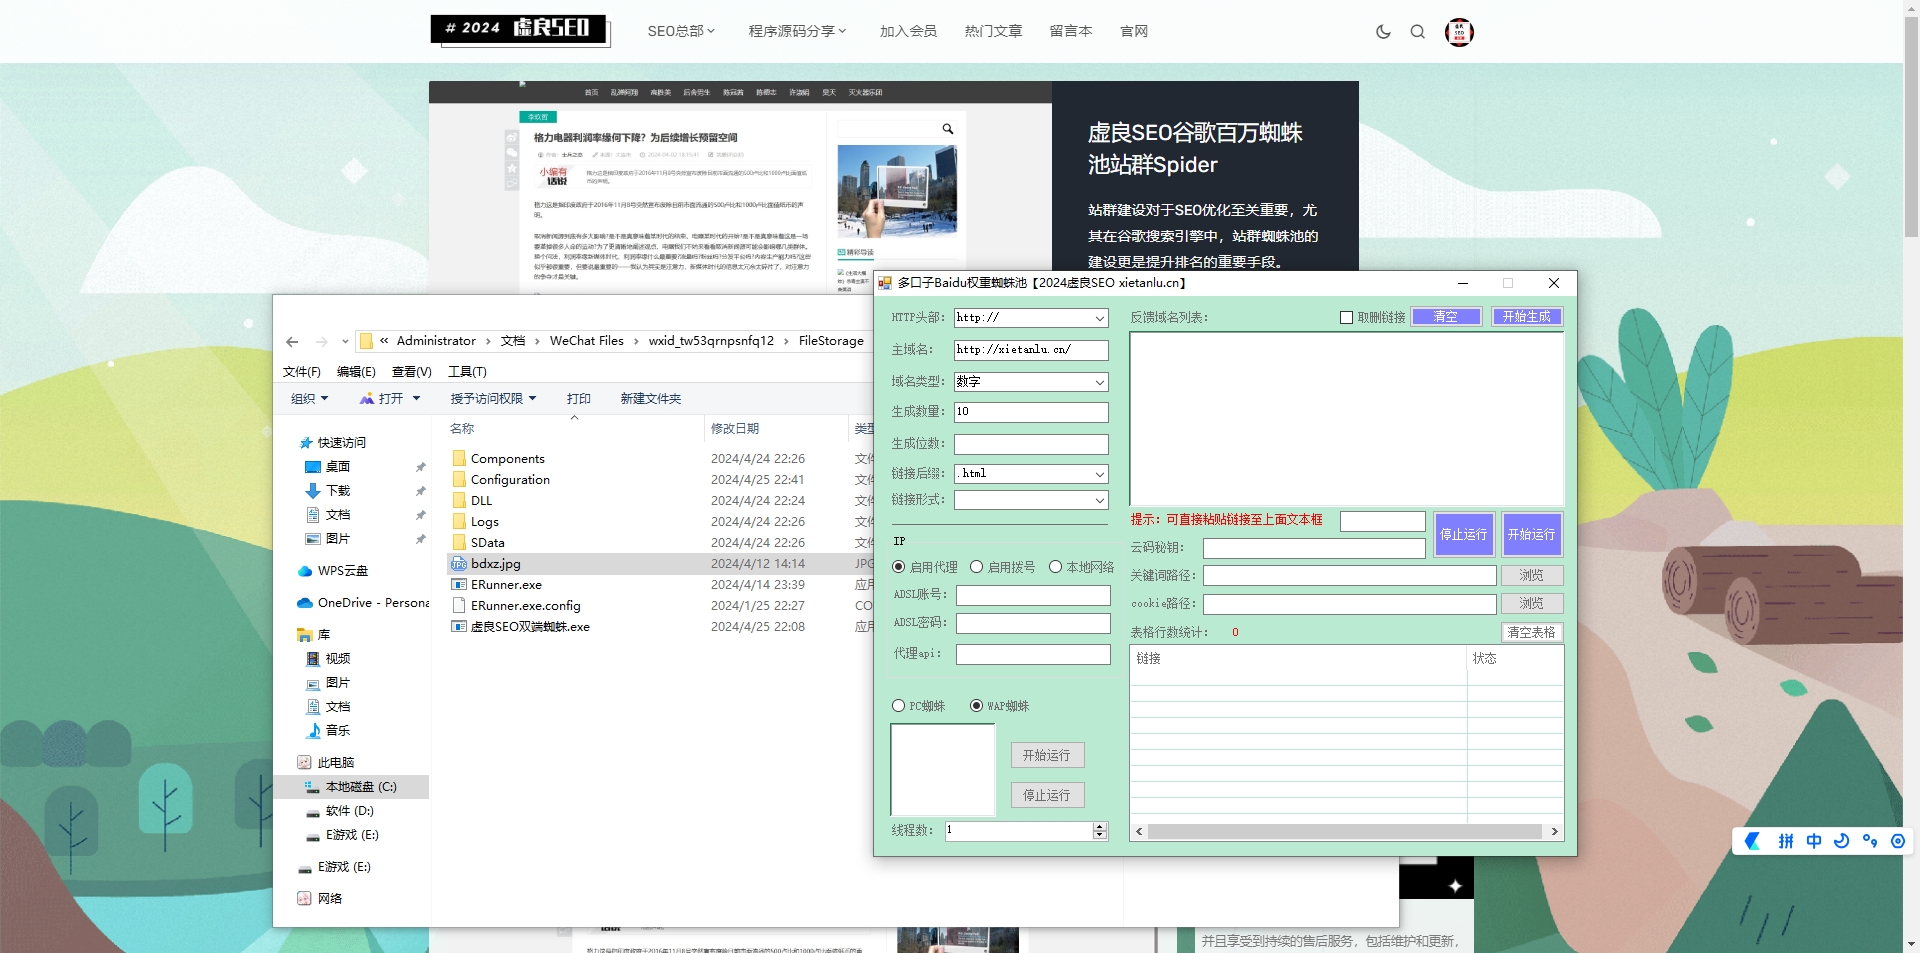 近期更新优链多口子权重Baidu蜘蛛+PC移动快速收录秒蜘蛛